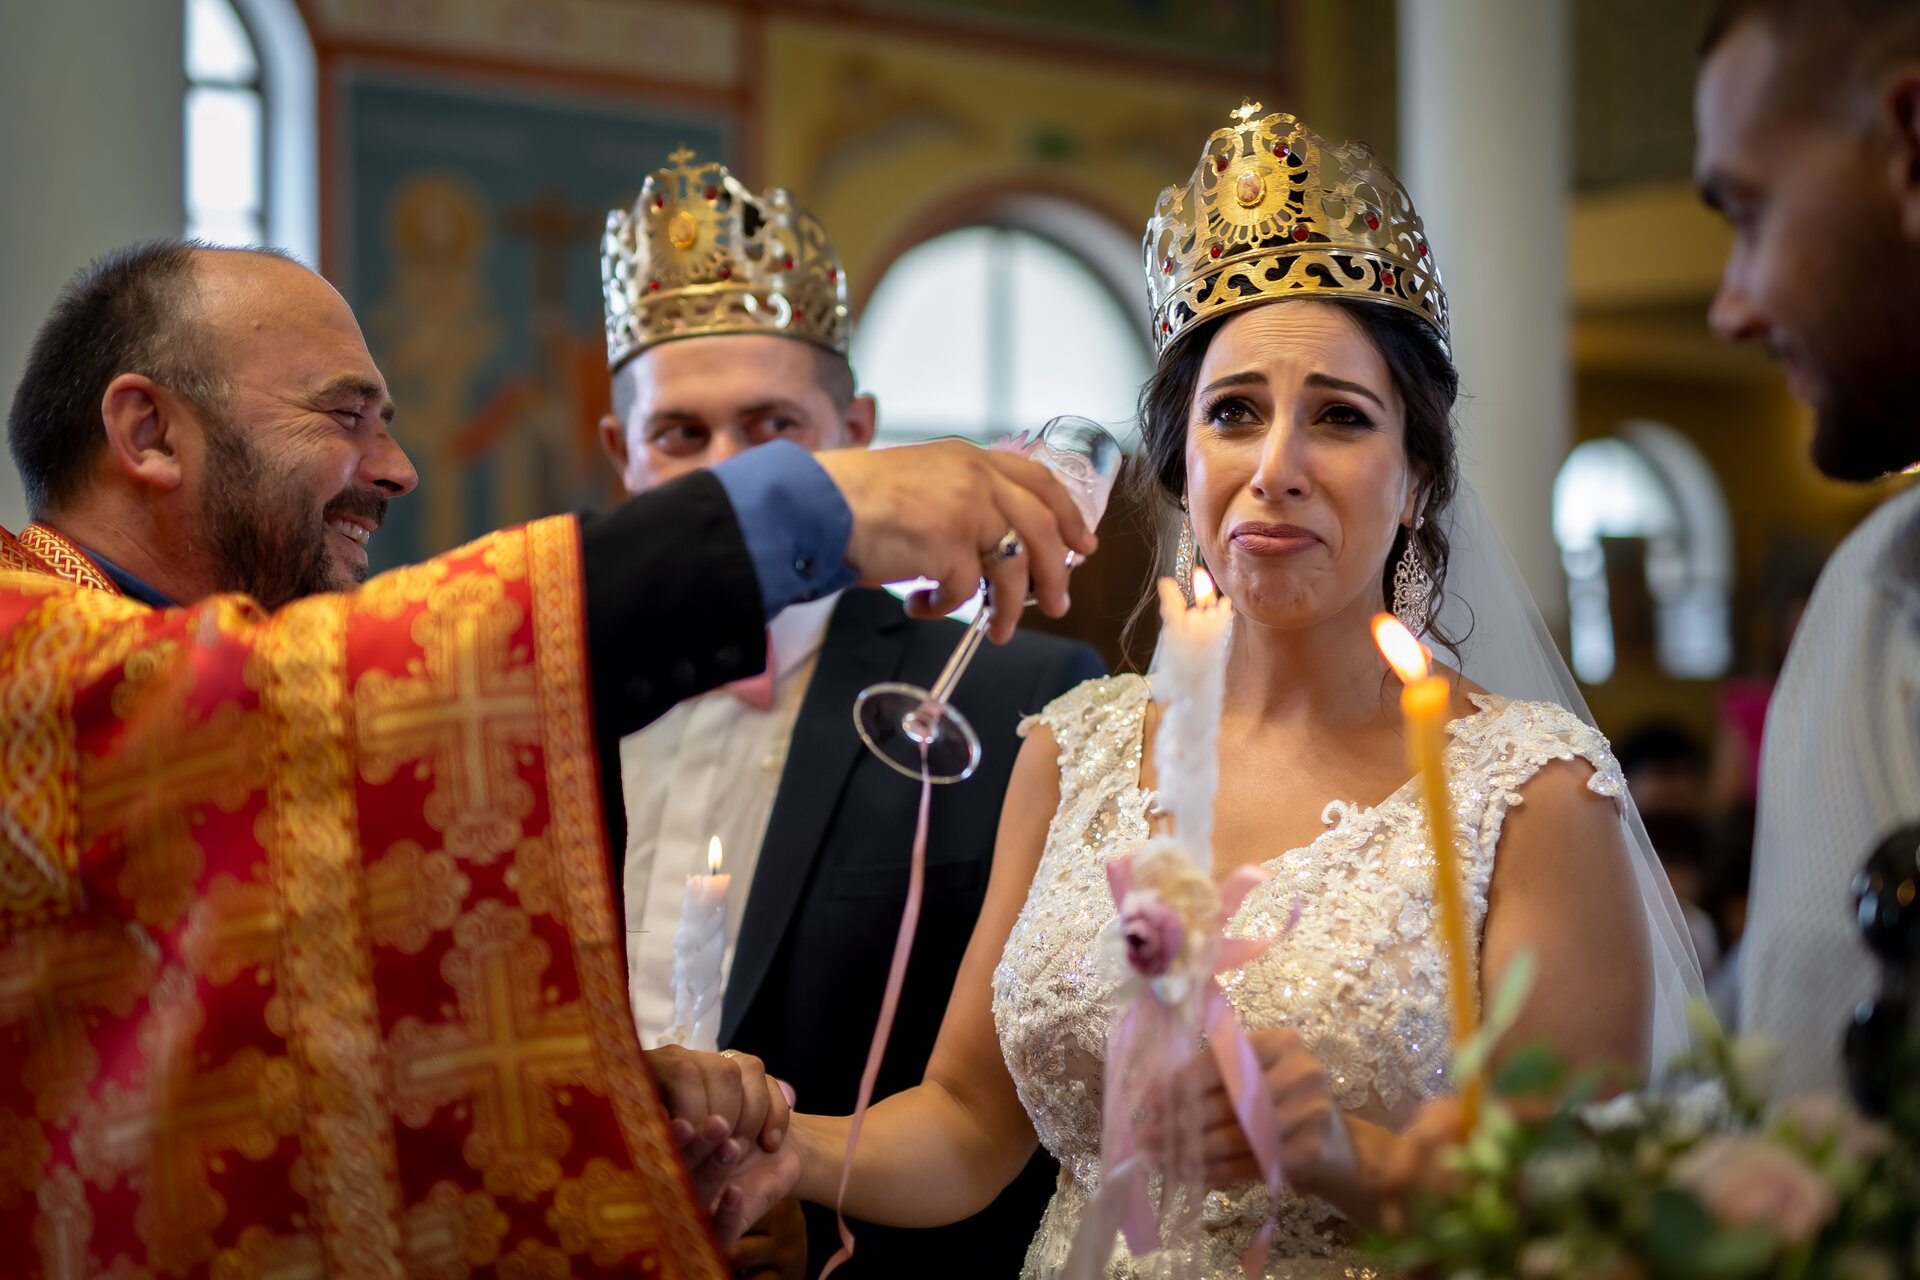 Photo in Wedding | Author Stoyan  Yordanov  - StoyanY | PHOTO FORUM